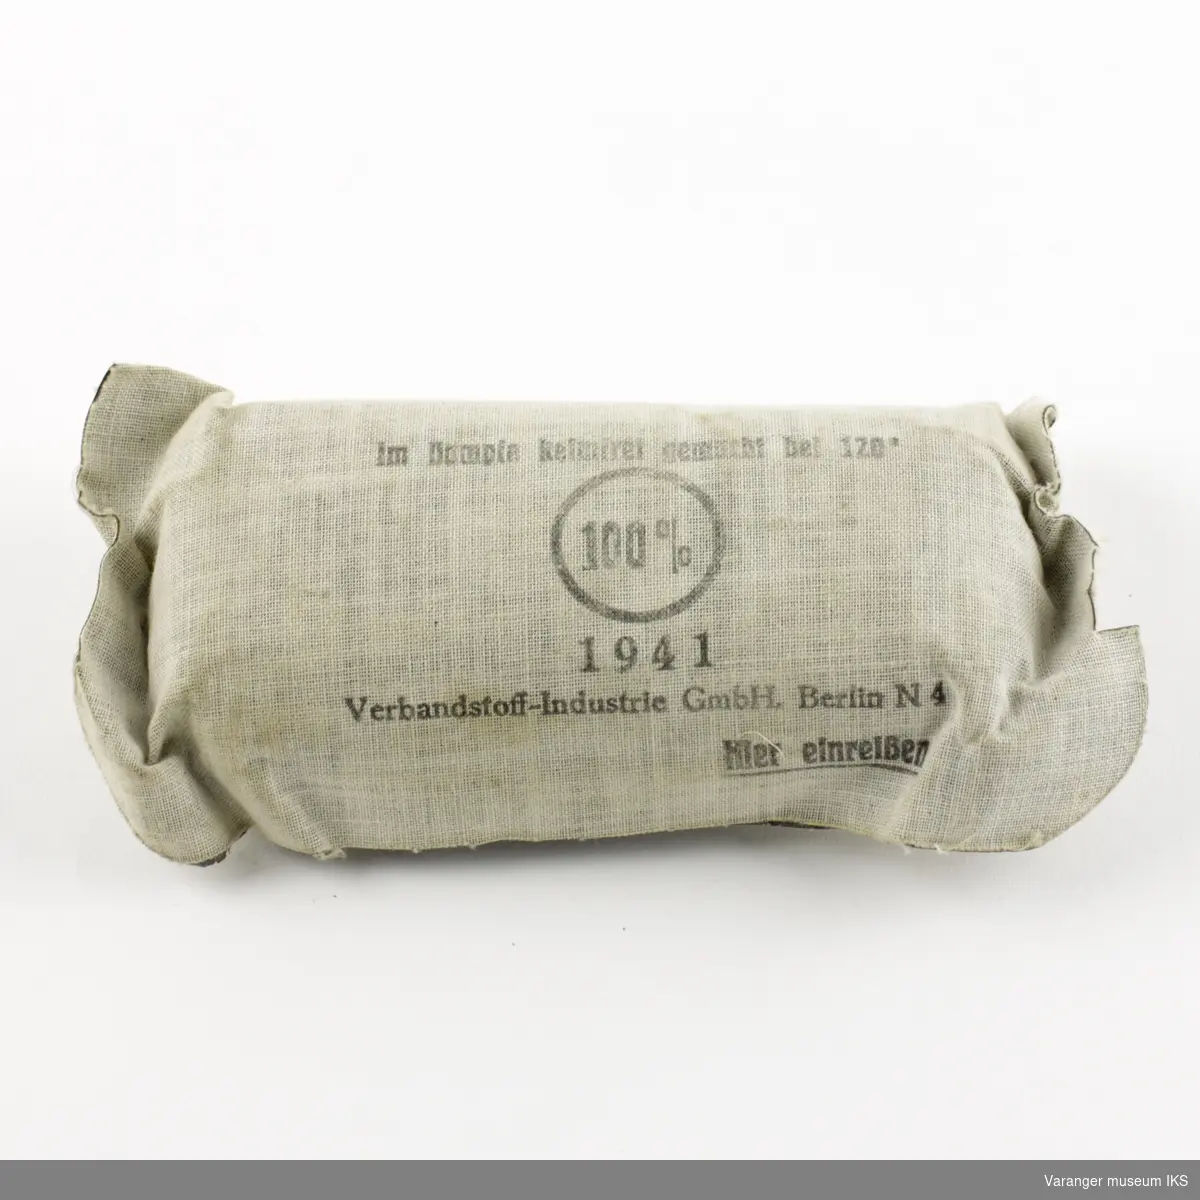 Tysk førstehjelpsutstyr (enmannspakke) fra andre verdenskrig. Ytre emballasje i grått lerretsstoff.